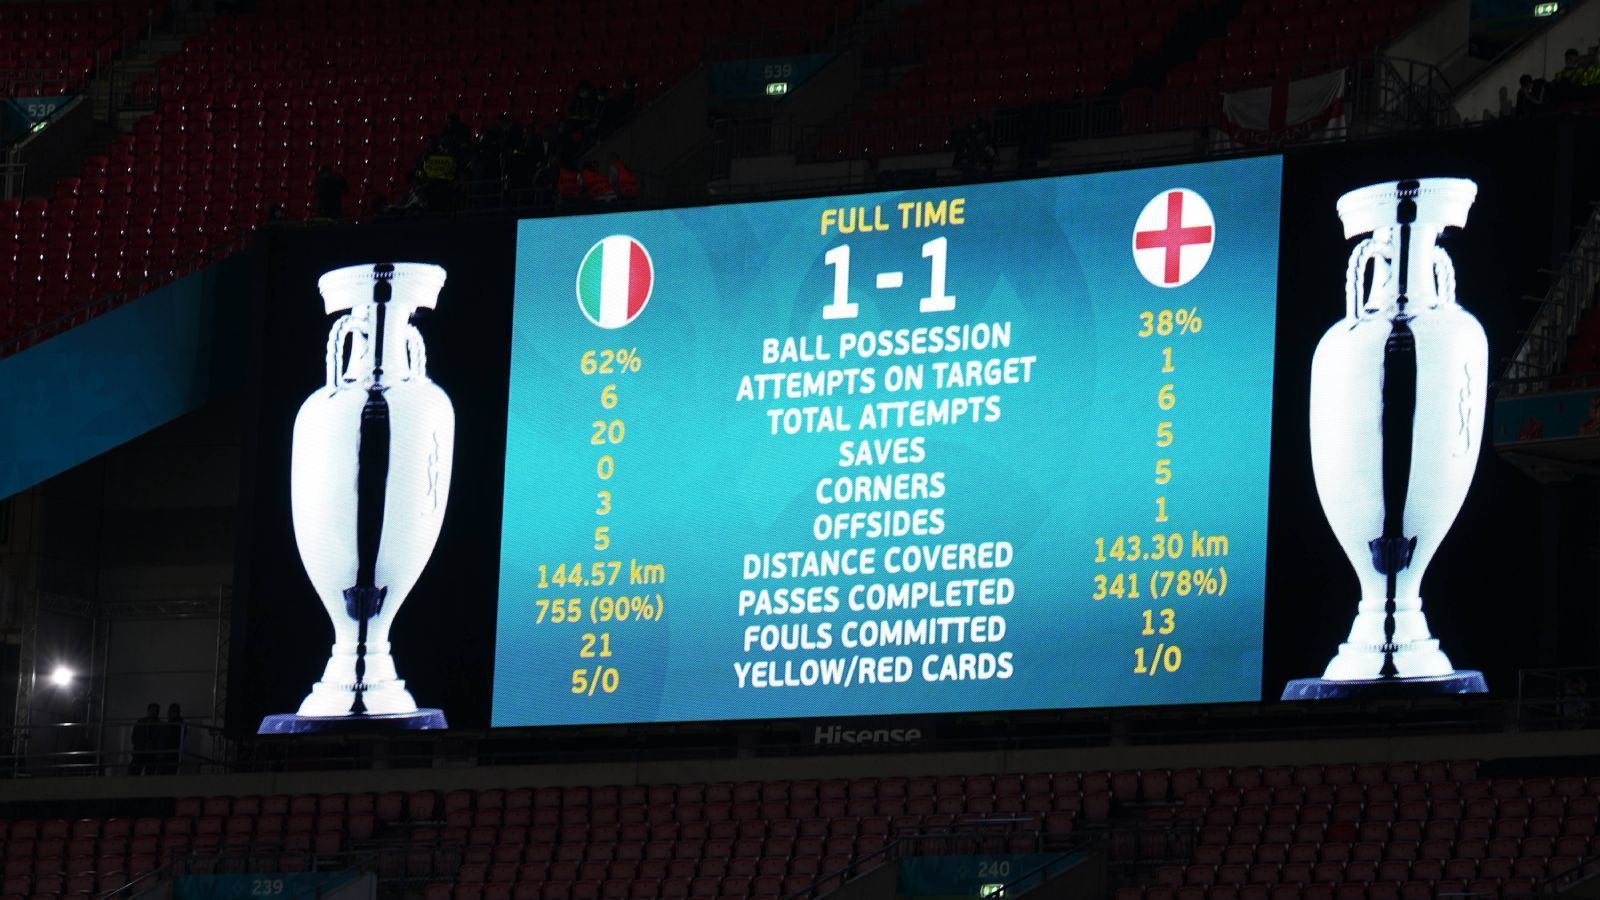 
                <strong>BILD (Deutschland)</strong><br>
                "Der Fußball kommt auch 2021 nicht nach Hause! Italien schlägt England im Wembley-Stadion im Elfmeterschießen und krönt sich zum zweiten Mal nach 1968 zum Europameister. Dabei hatten die 'Three Lions' mehrfach die besseren Karten. Zunächst führte England in der regulären Spielzeit lange, kassierte aber noch den Ausgleich."
              